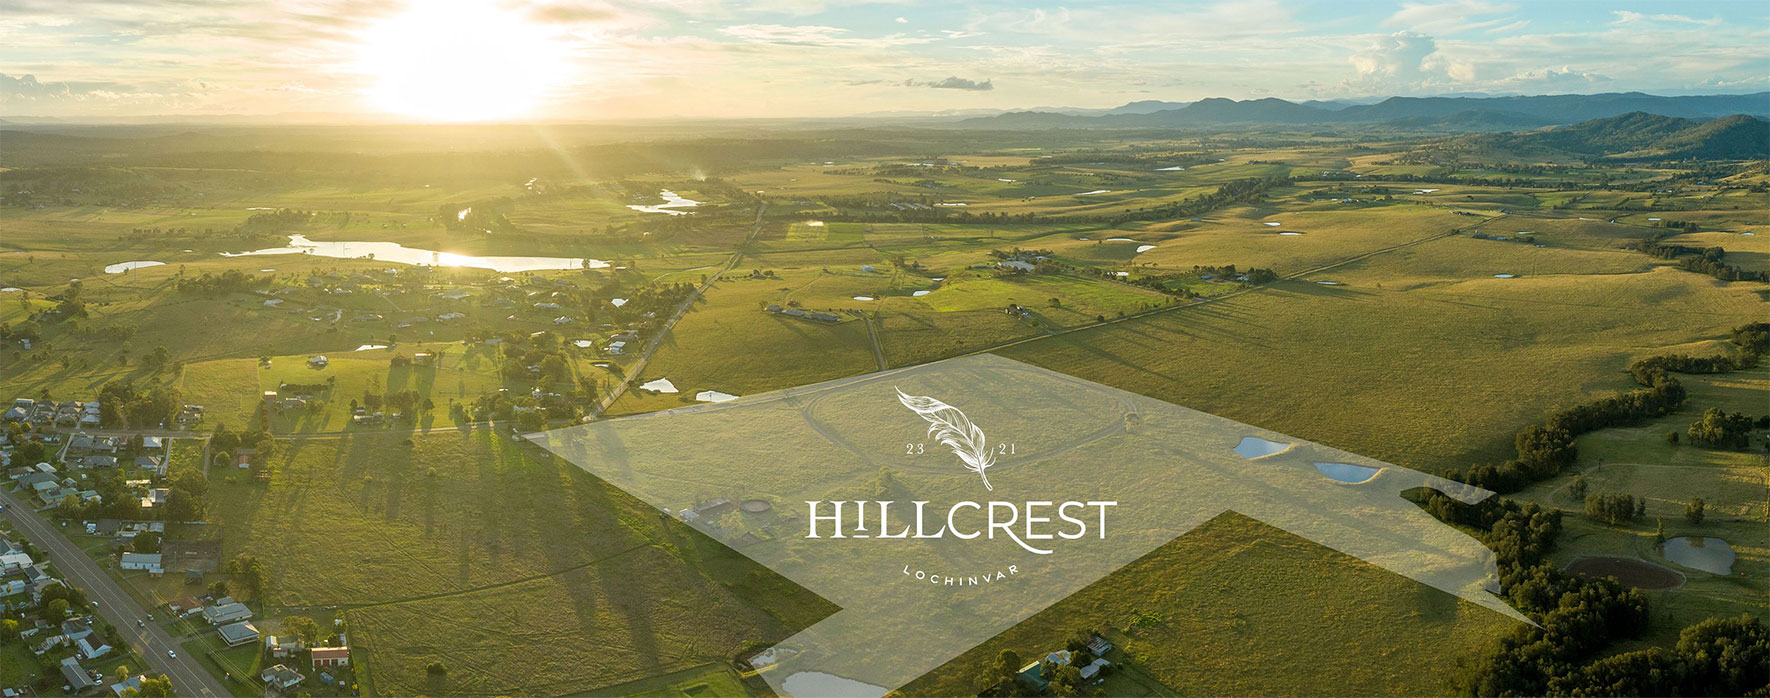 hillcrest-lochinvar-estate-header